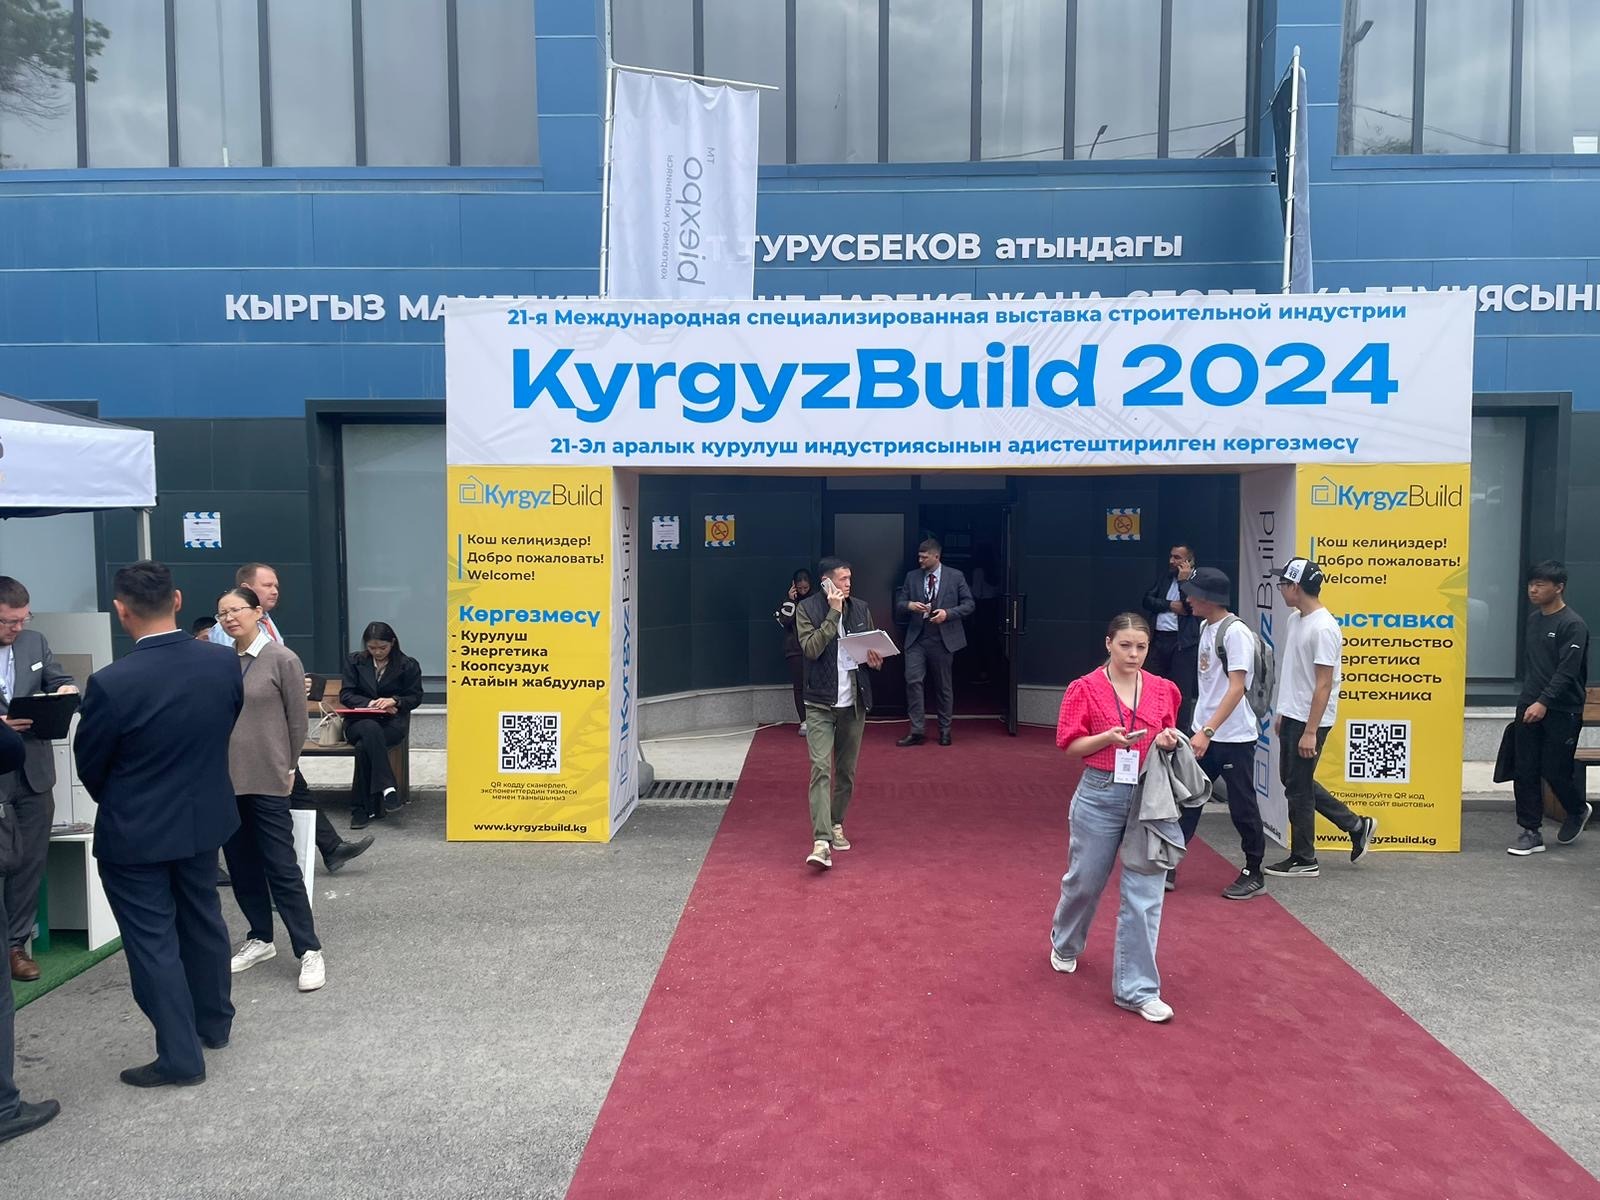 ОАО "Могилевлитмаш" принимает участие  в Международной специализированной выставке строительной индустрии KyrgyzBuild 2024